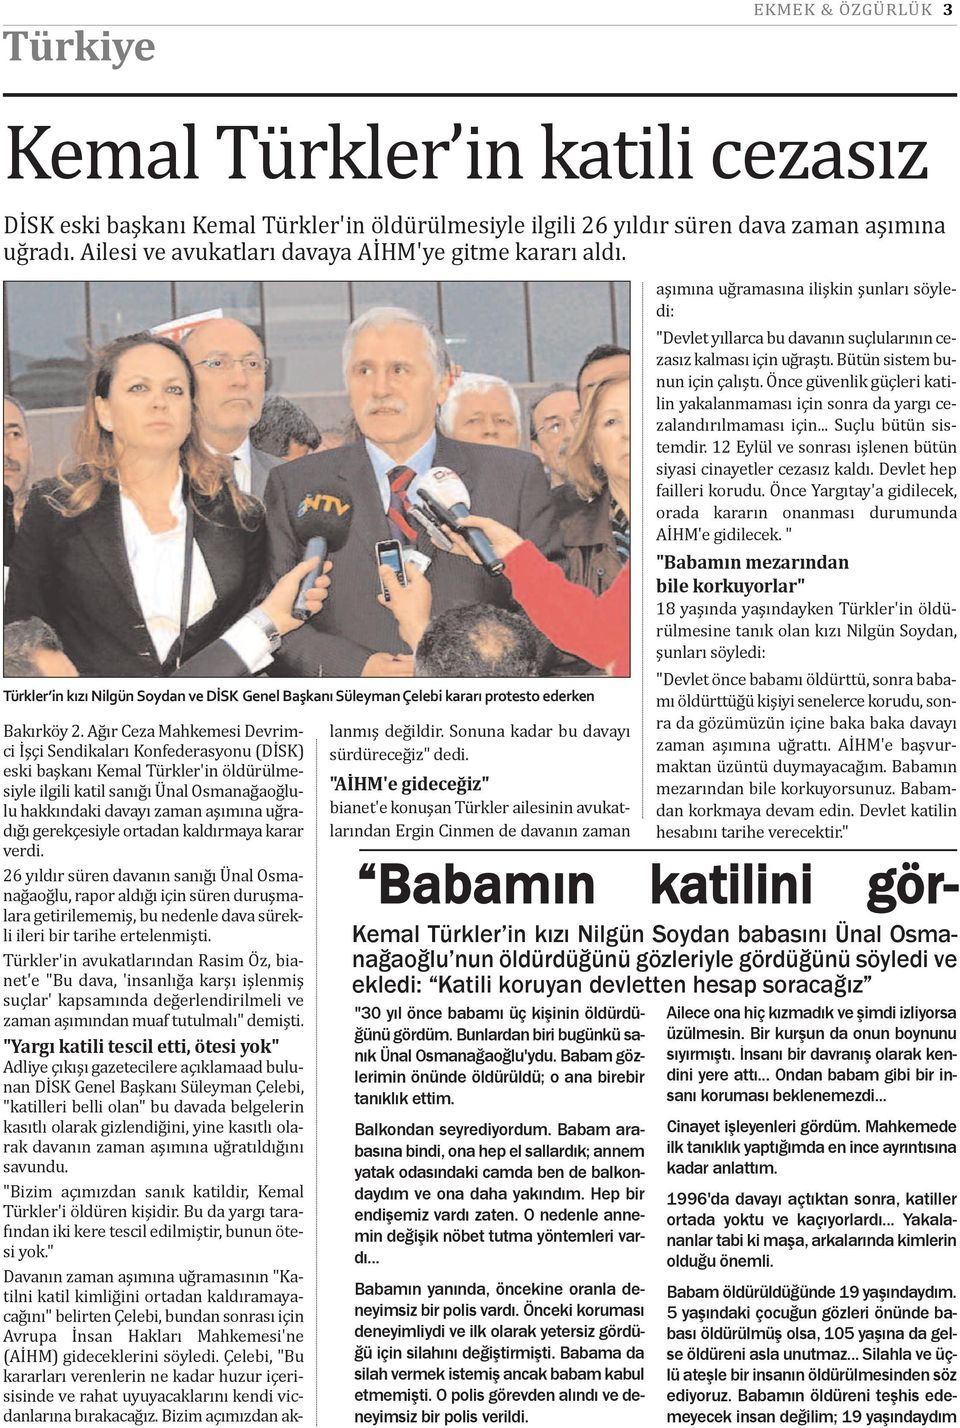 Ağır Ceza Mahkemesi Devrimci İşçi Sendikaları Konfederasyonu (DİSK) eski başkanı Kemal Türkler'in öldürülmesiyle ilgili katil sanığı Ünal Osmanağaoğlulu hakkındaki davayı zaman aşımına uğradığı